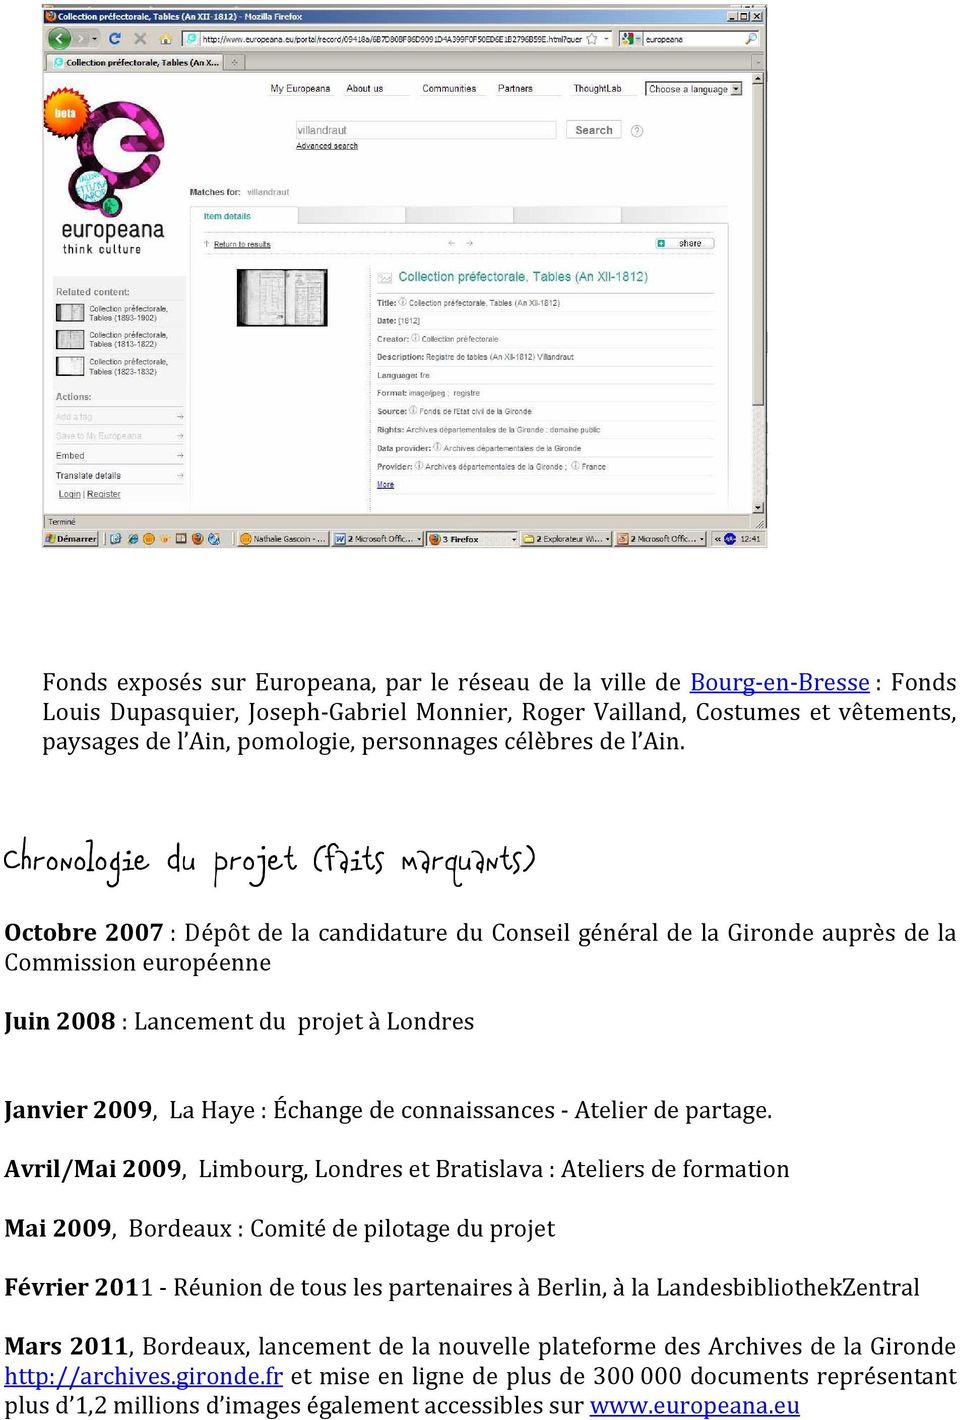 Chronologie du projet (faits marquants) Octobre 2007 : Dépôt de la candidature du Conseil général de la Gironde auprès de la Commission européenne Juin 2008 : Lancement du projet à Londres Janvier